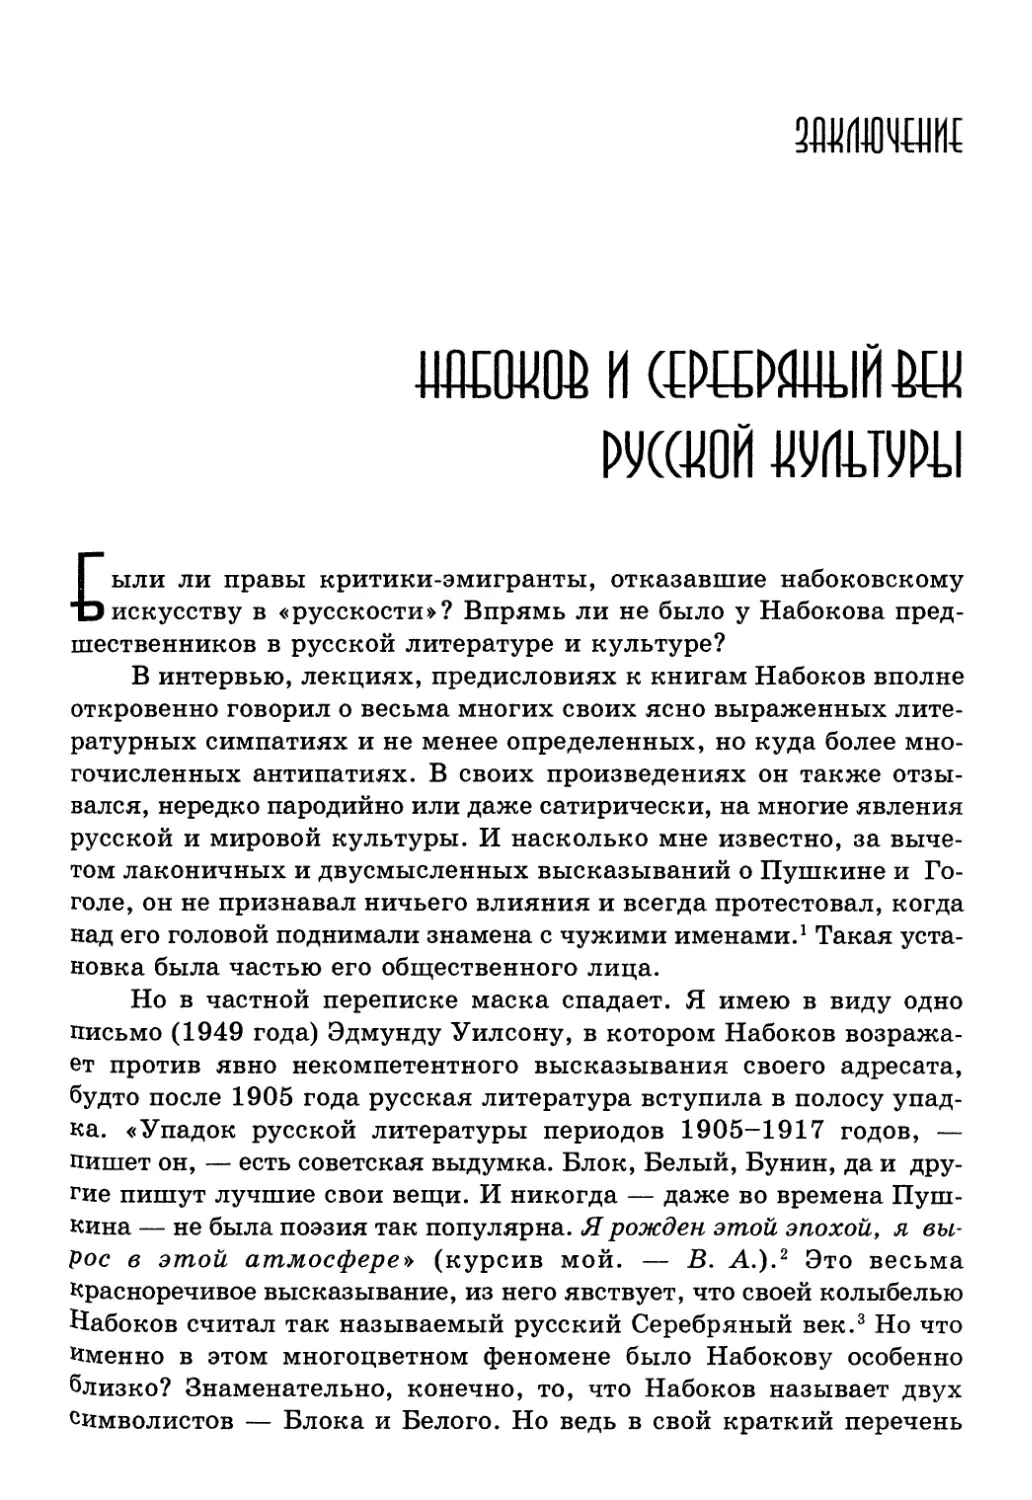 Заключение: Набоков и Серебряный век русской культуры